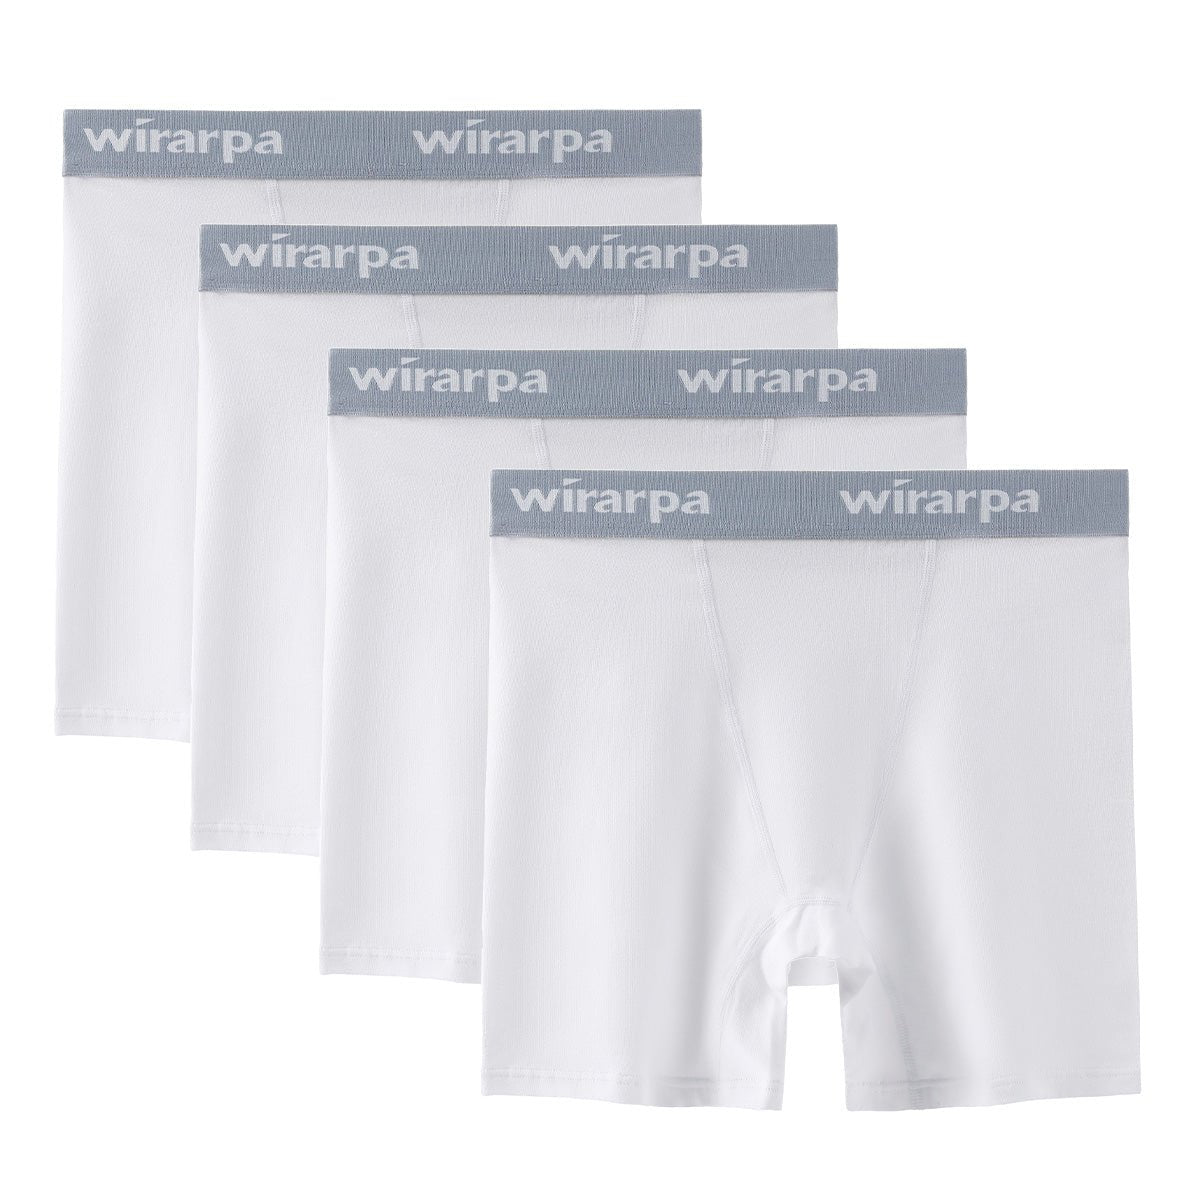 wirarpa Women's Boxer Briefs Cotton Underwear Anti Chafing Boy